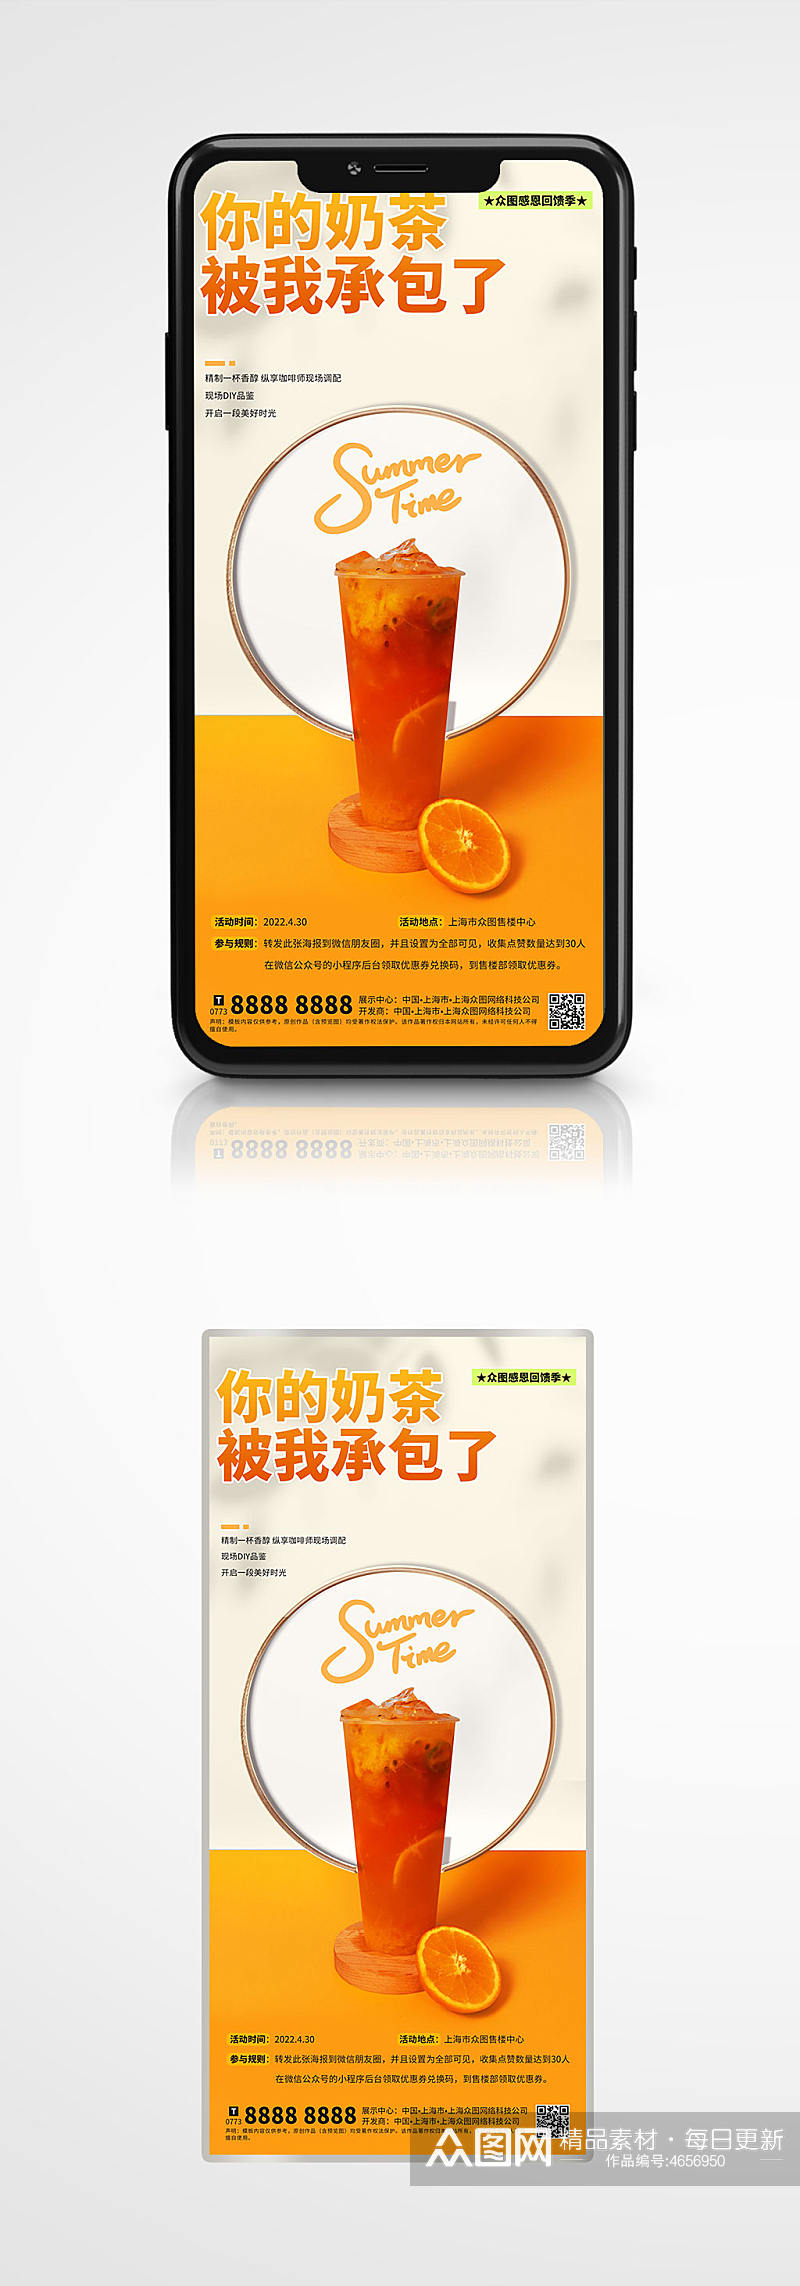 中式地产夏季促销奶茶活动海报展板素材